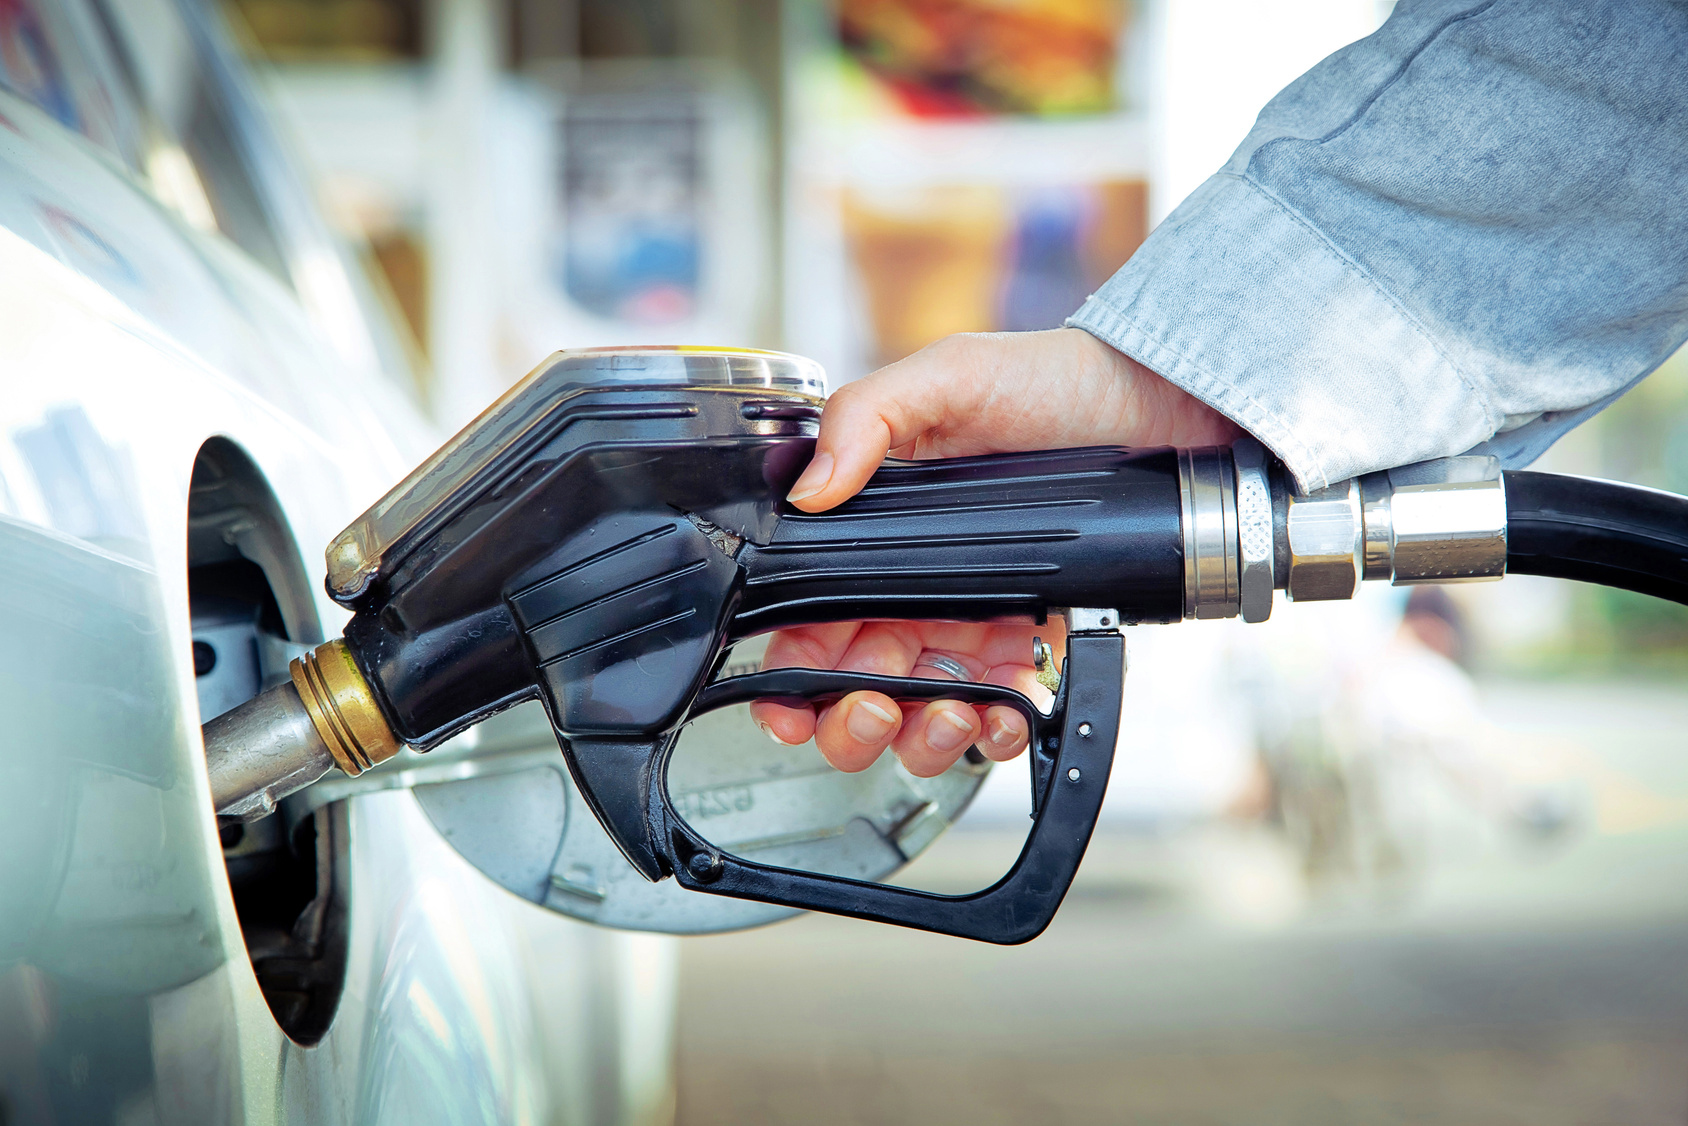 Kraftstoff verwechselt: Was tun bei falschem Kraftstoff im Tank? - Presse  Ace